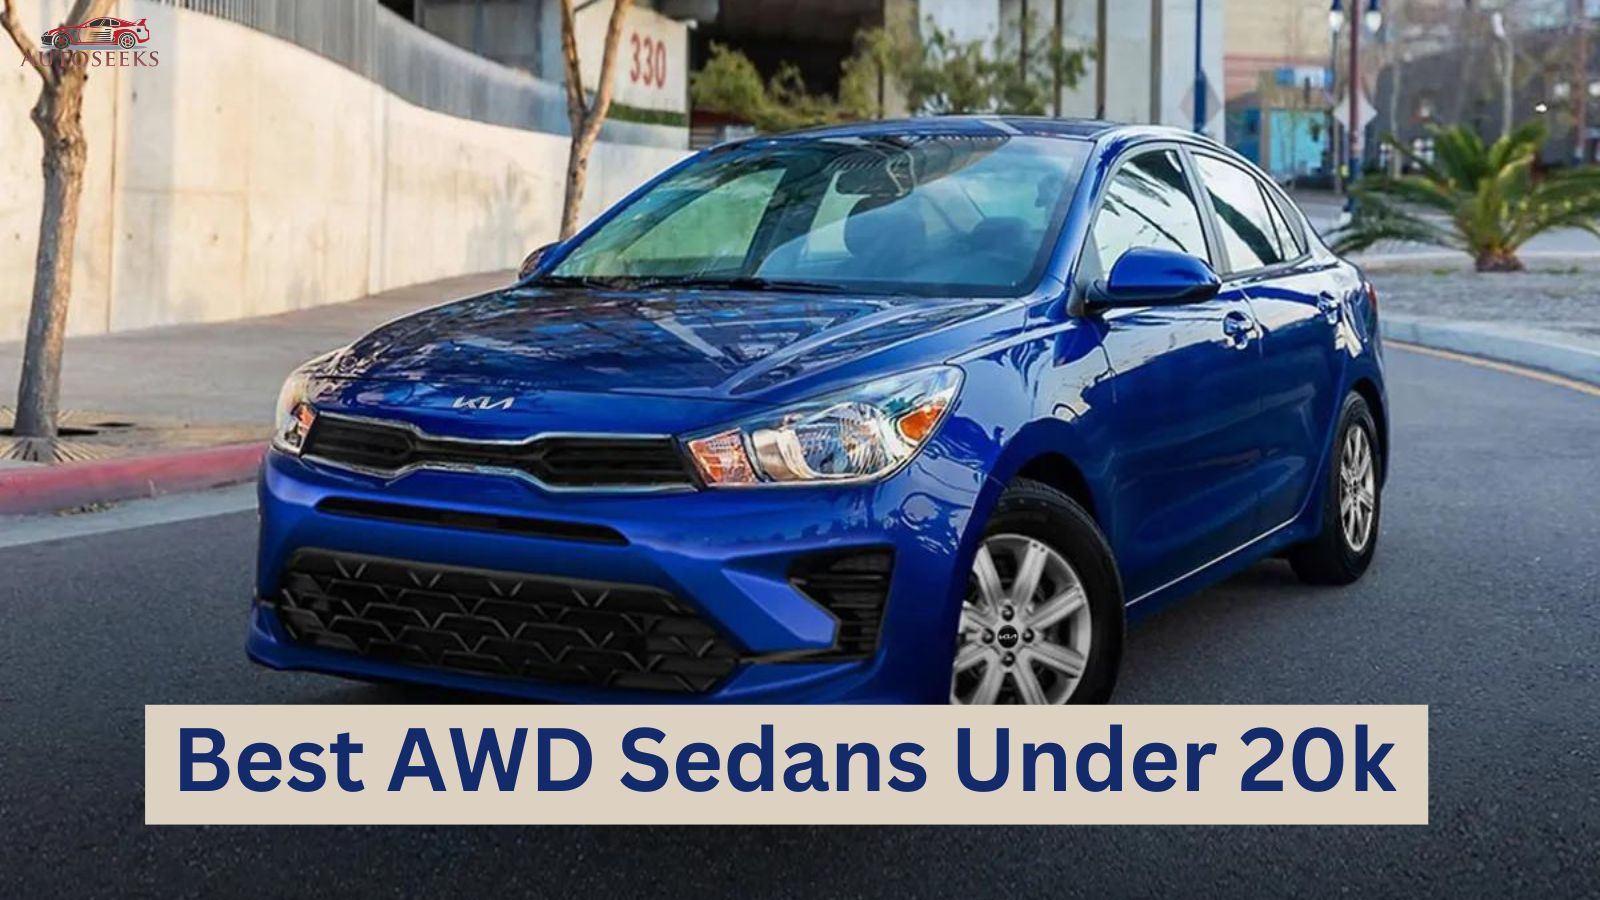 8 Best AWD Sedans Under 20k That Offers Value for Money